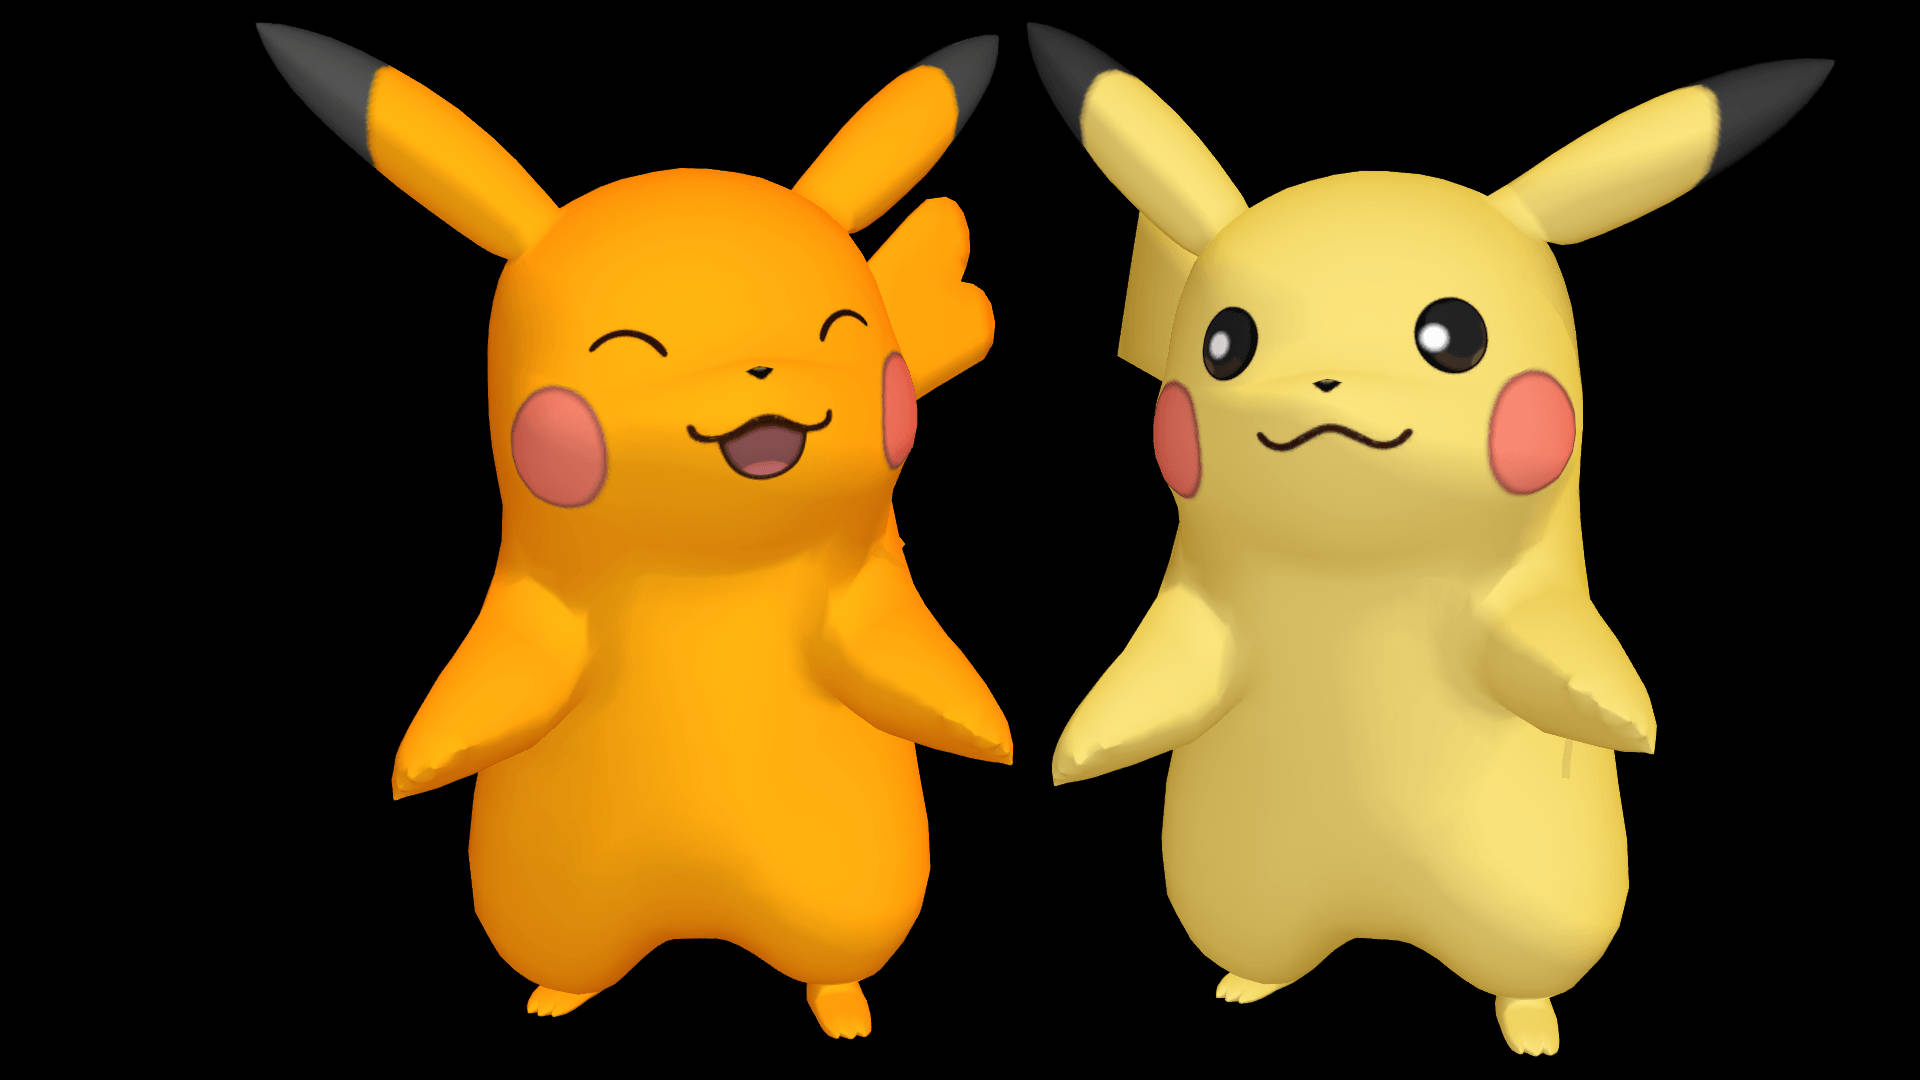 Pikachu 3d Shiny Pokémons Background